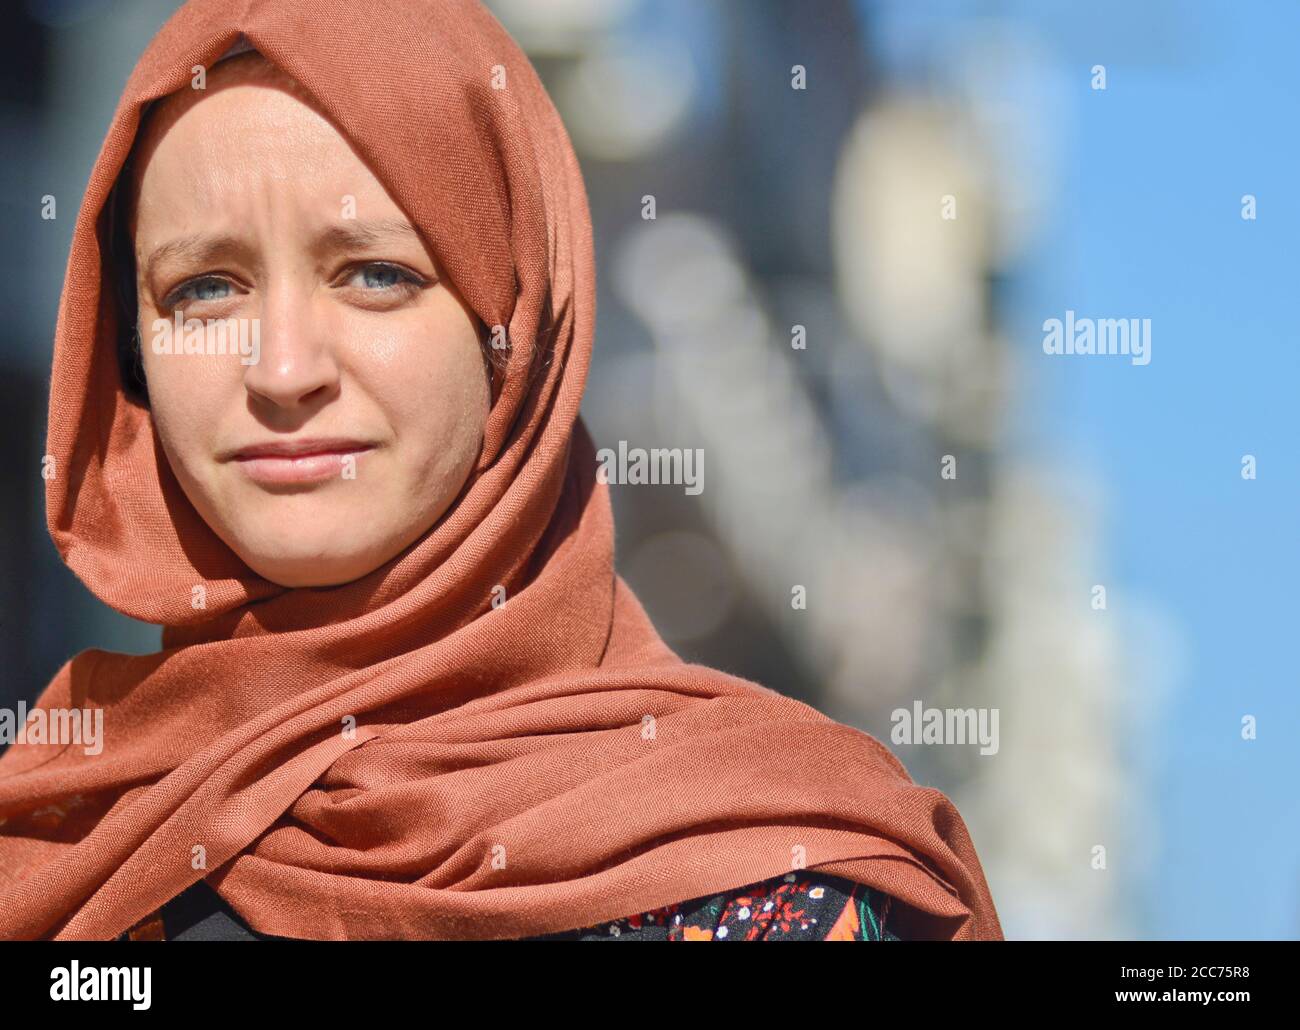 Jeune fille musulmane européenne aux yeux bleus, dans la via Sparano da Bari. Bari, Italie Banque D'Images